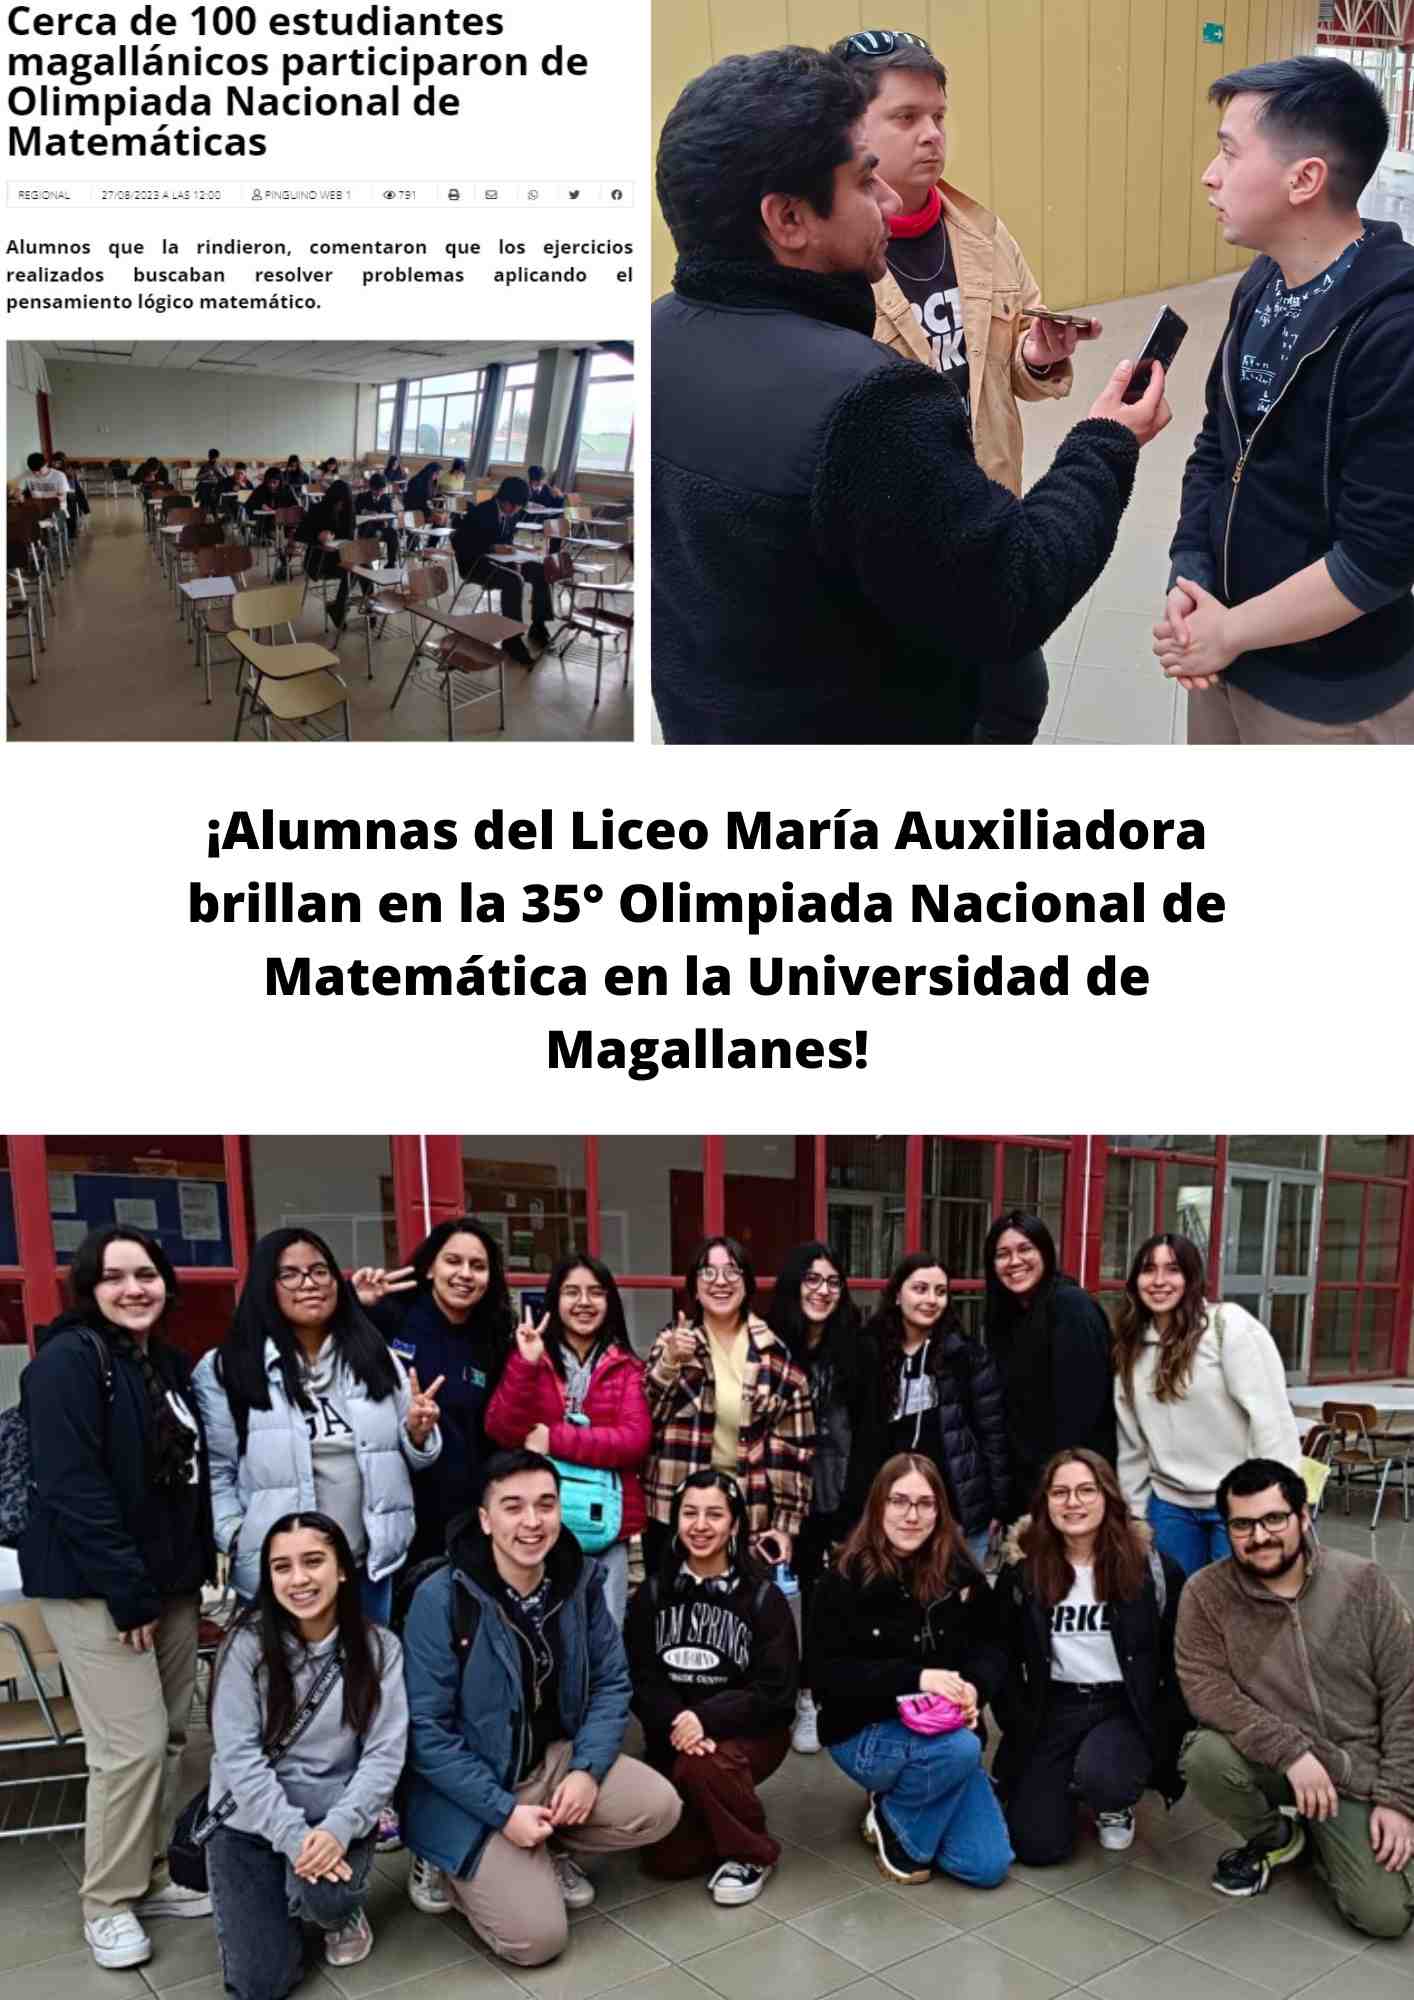 ¡Alumnas del Liceo María Auxiliadora brillan en la 35° Olimpiada Nacional de Matemática en la Universidad de Magallanes!